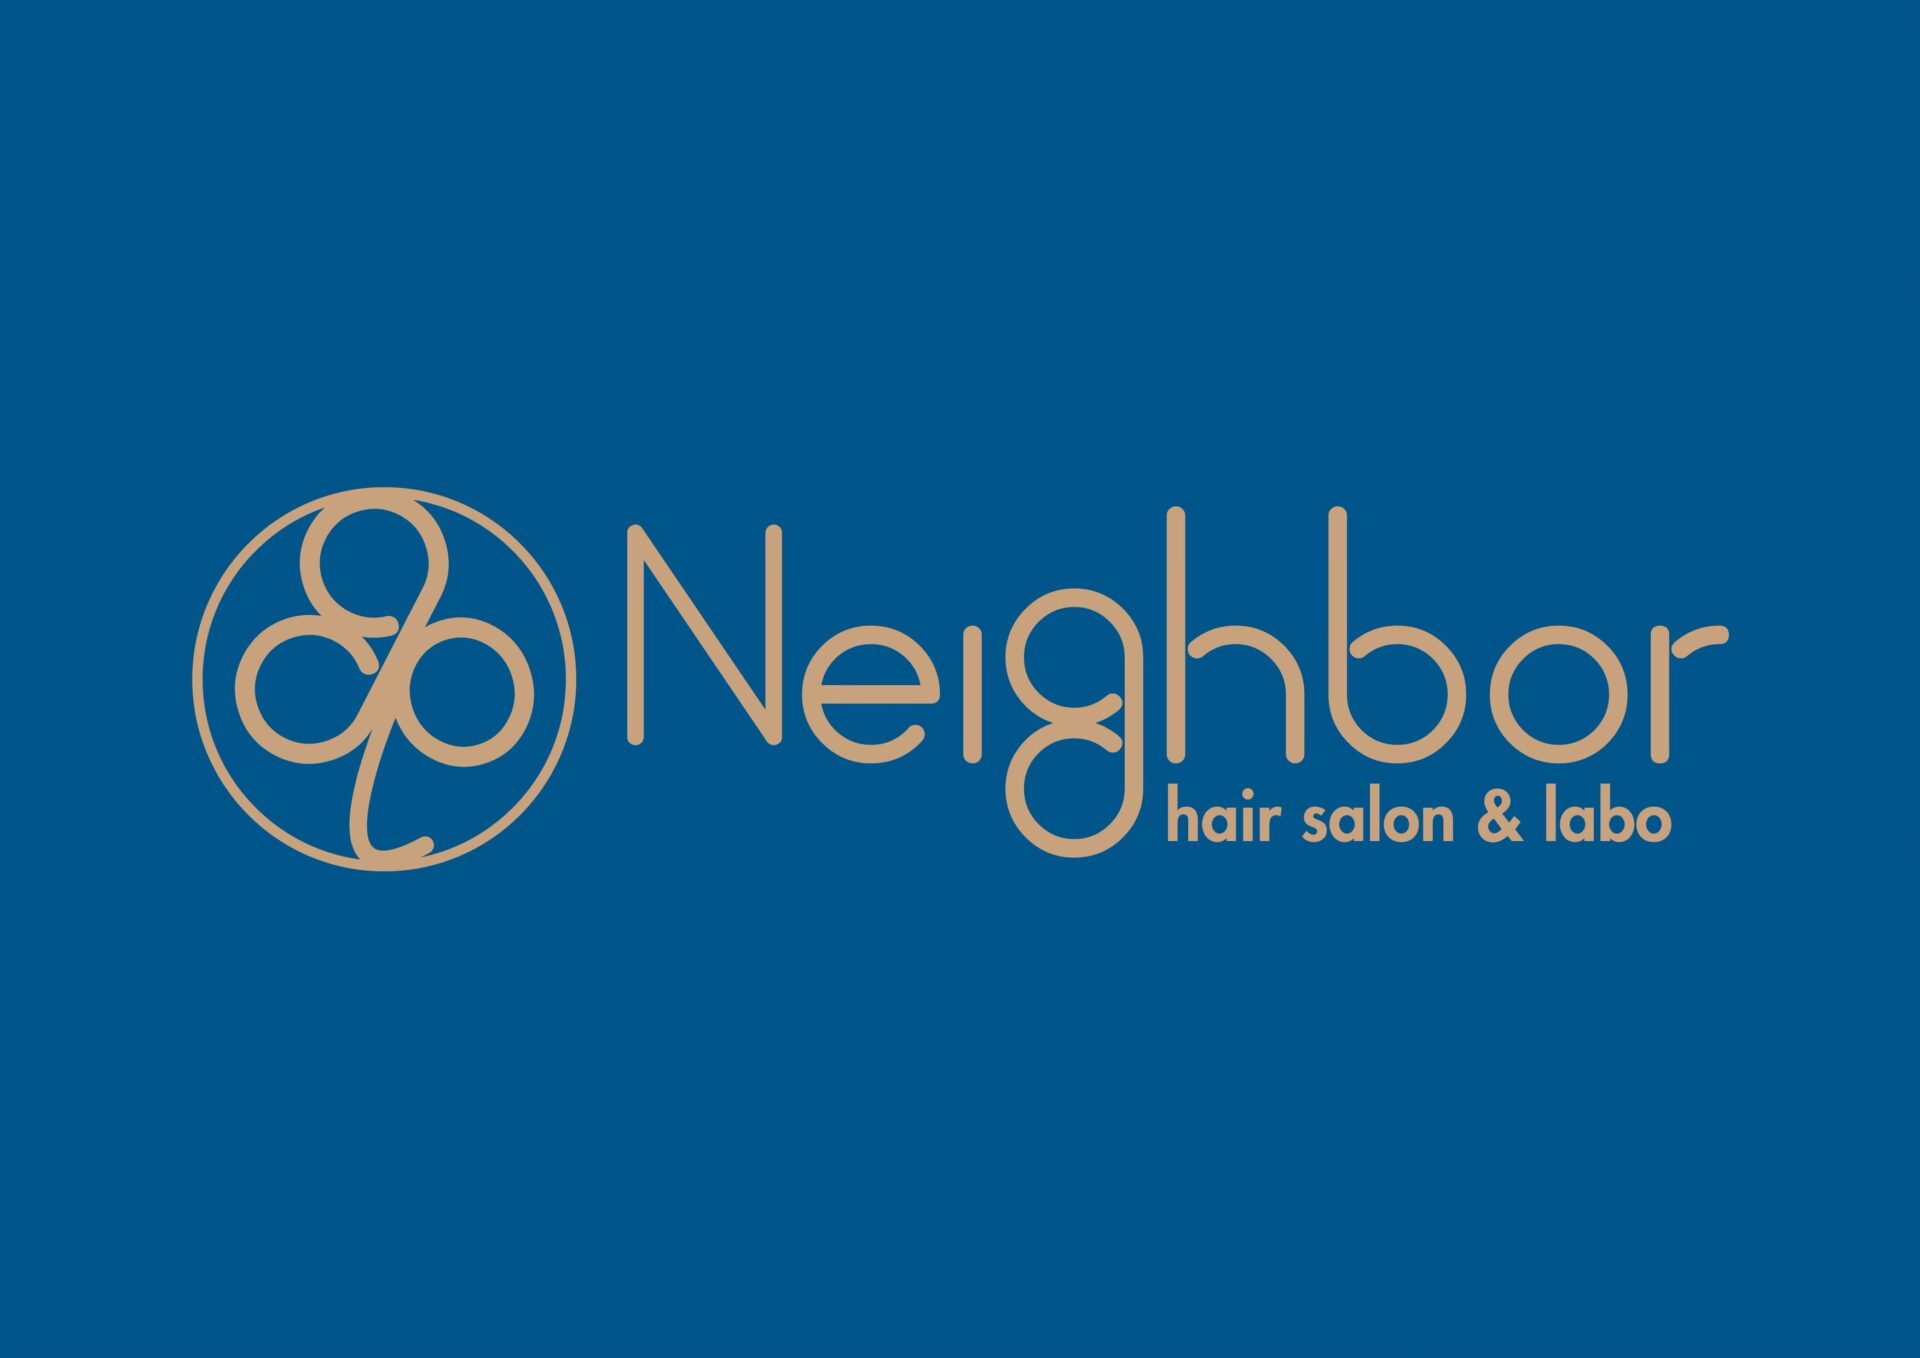 Neighbor hair salon & labo